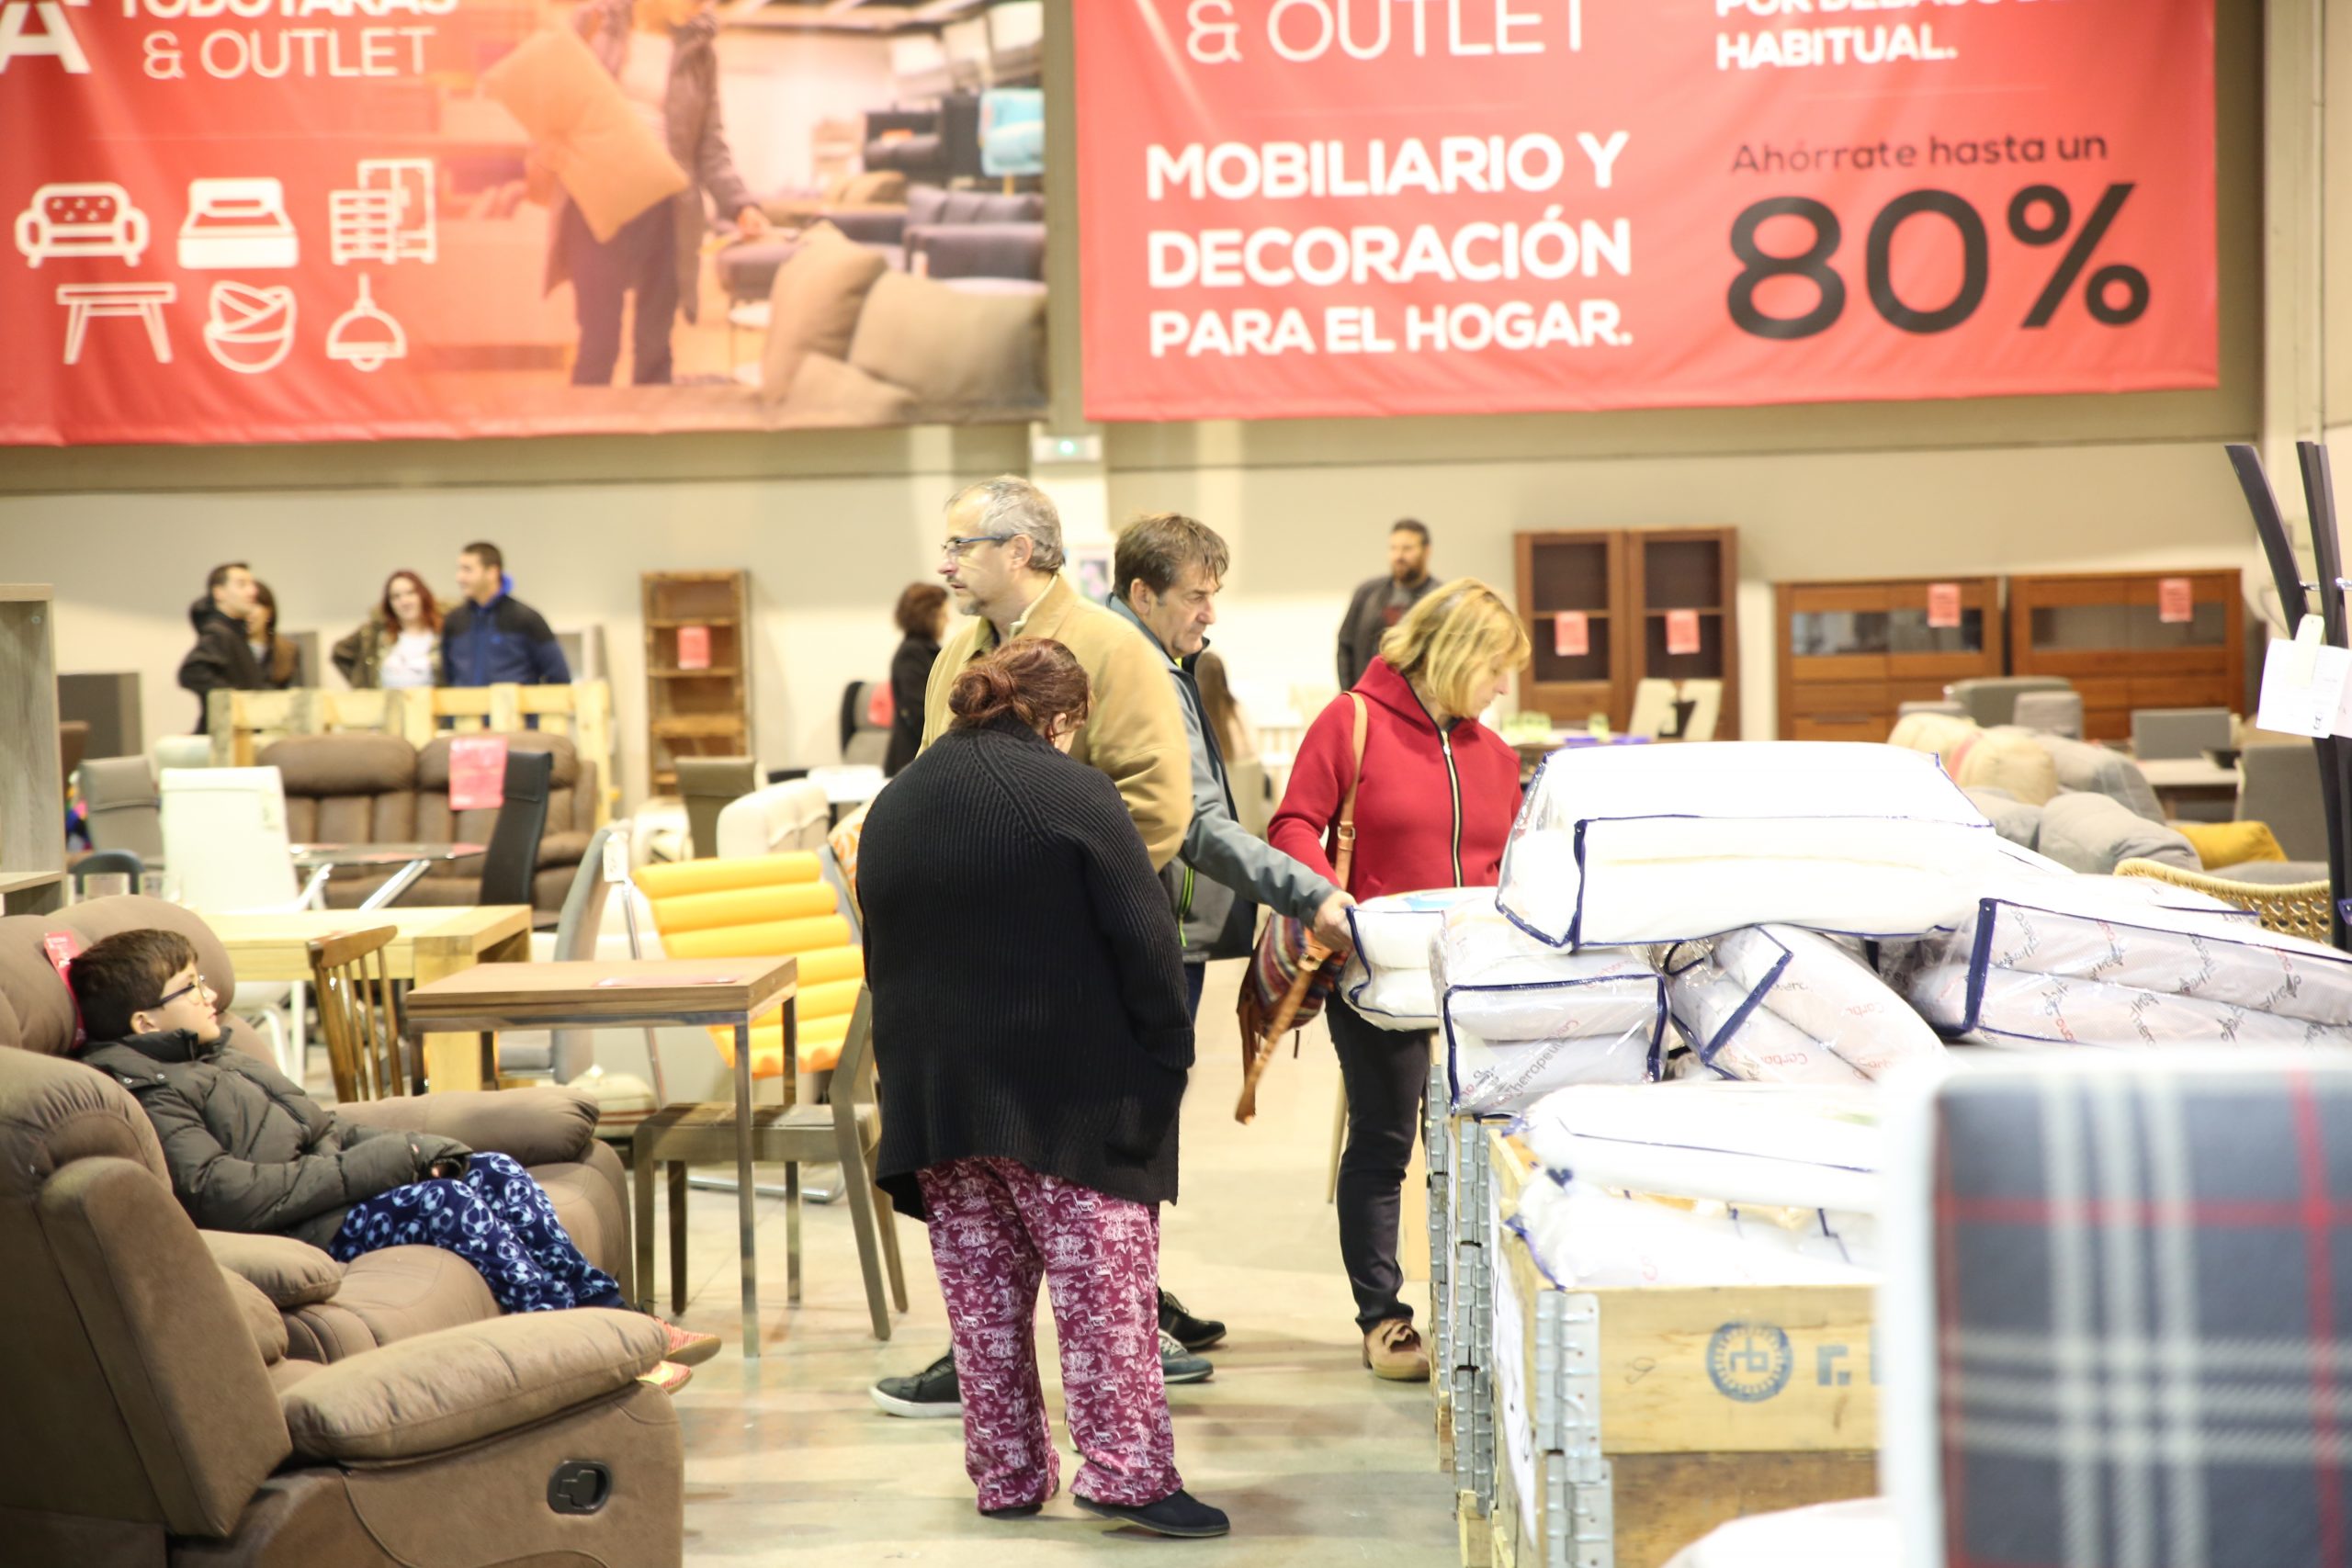 paquete enero pelota Outlet de muebles en Zaragoza - TODOTARAS & OUTLET